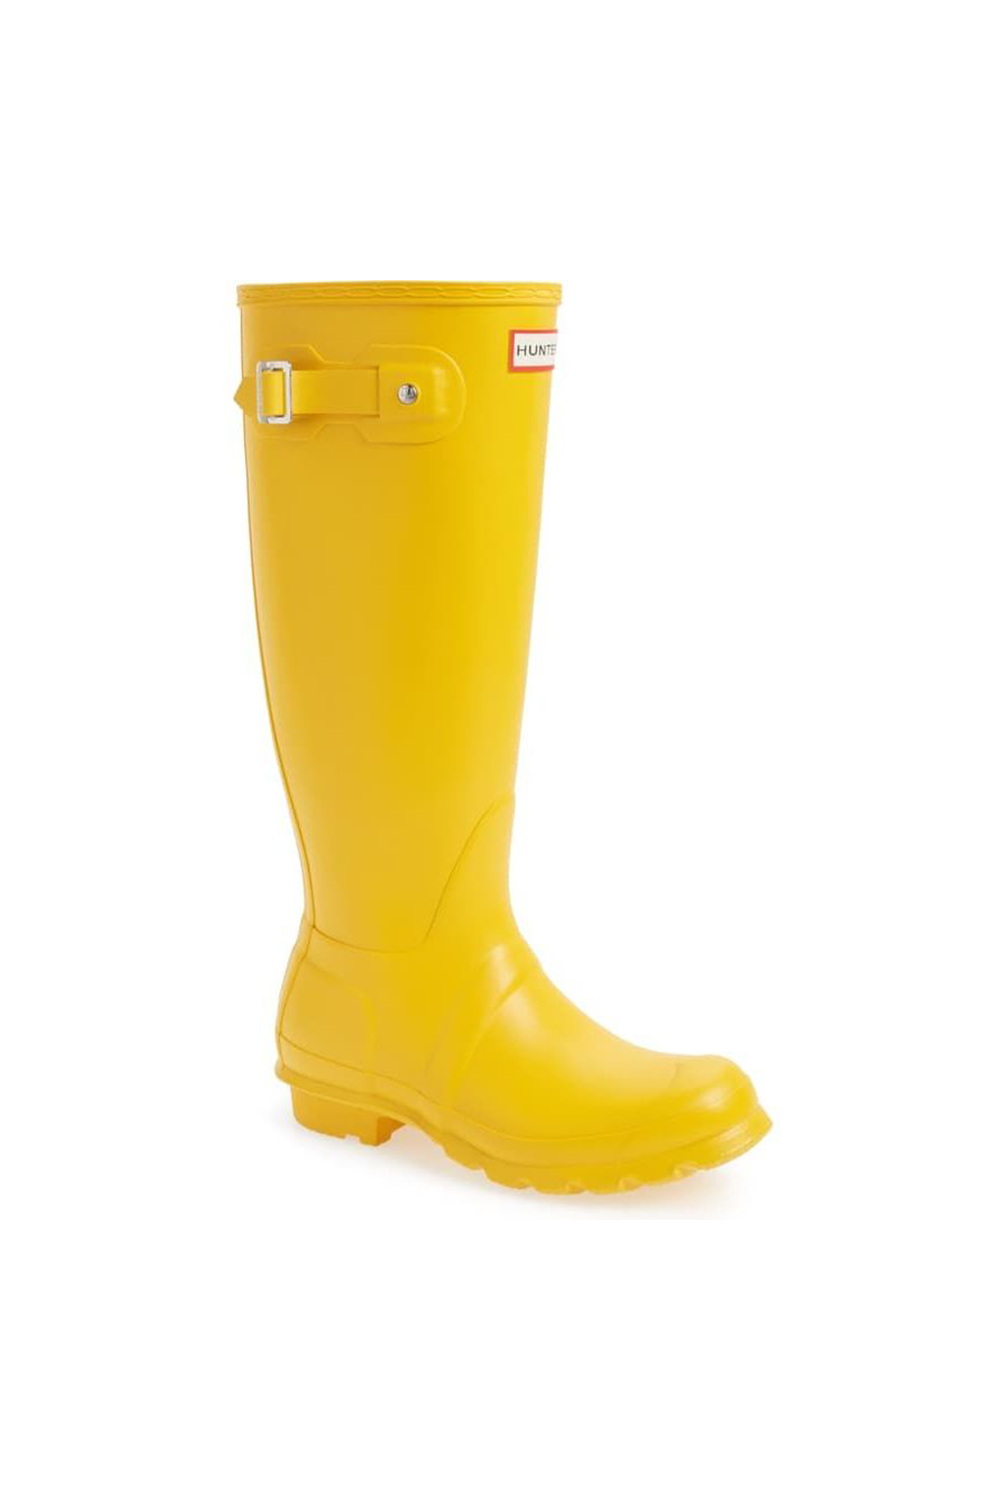 women's light up rain boots